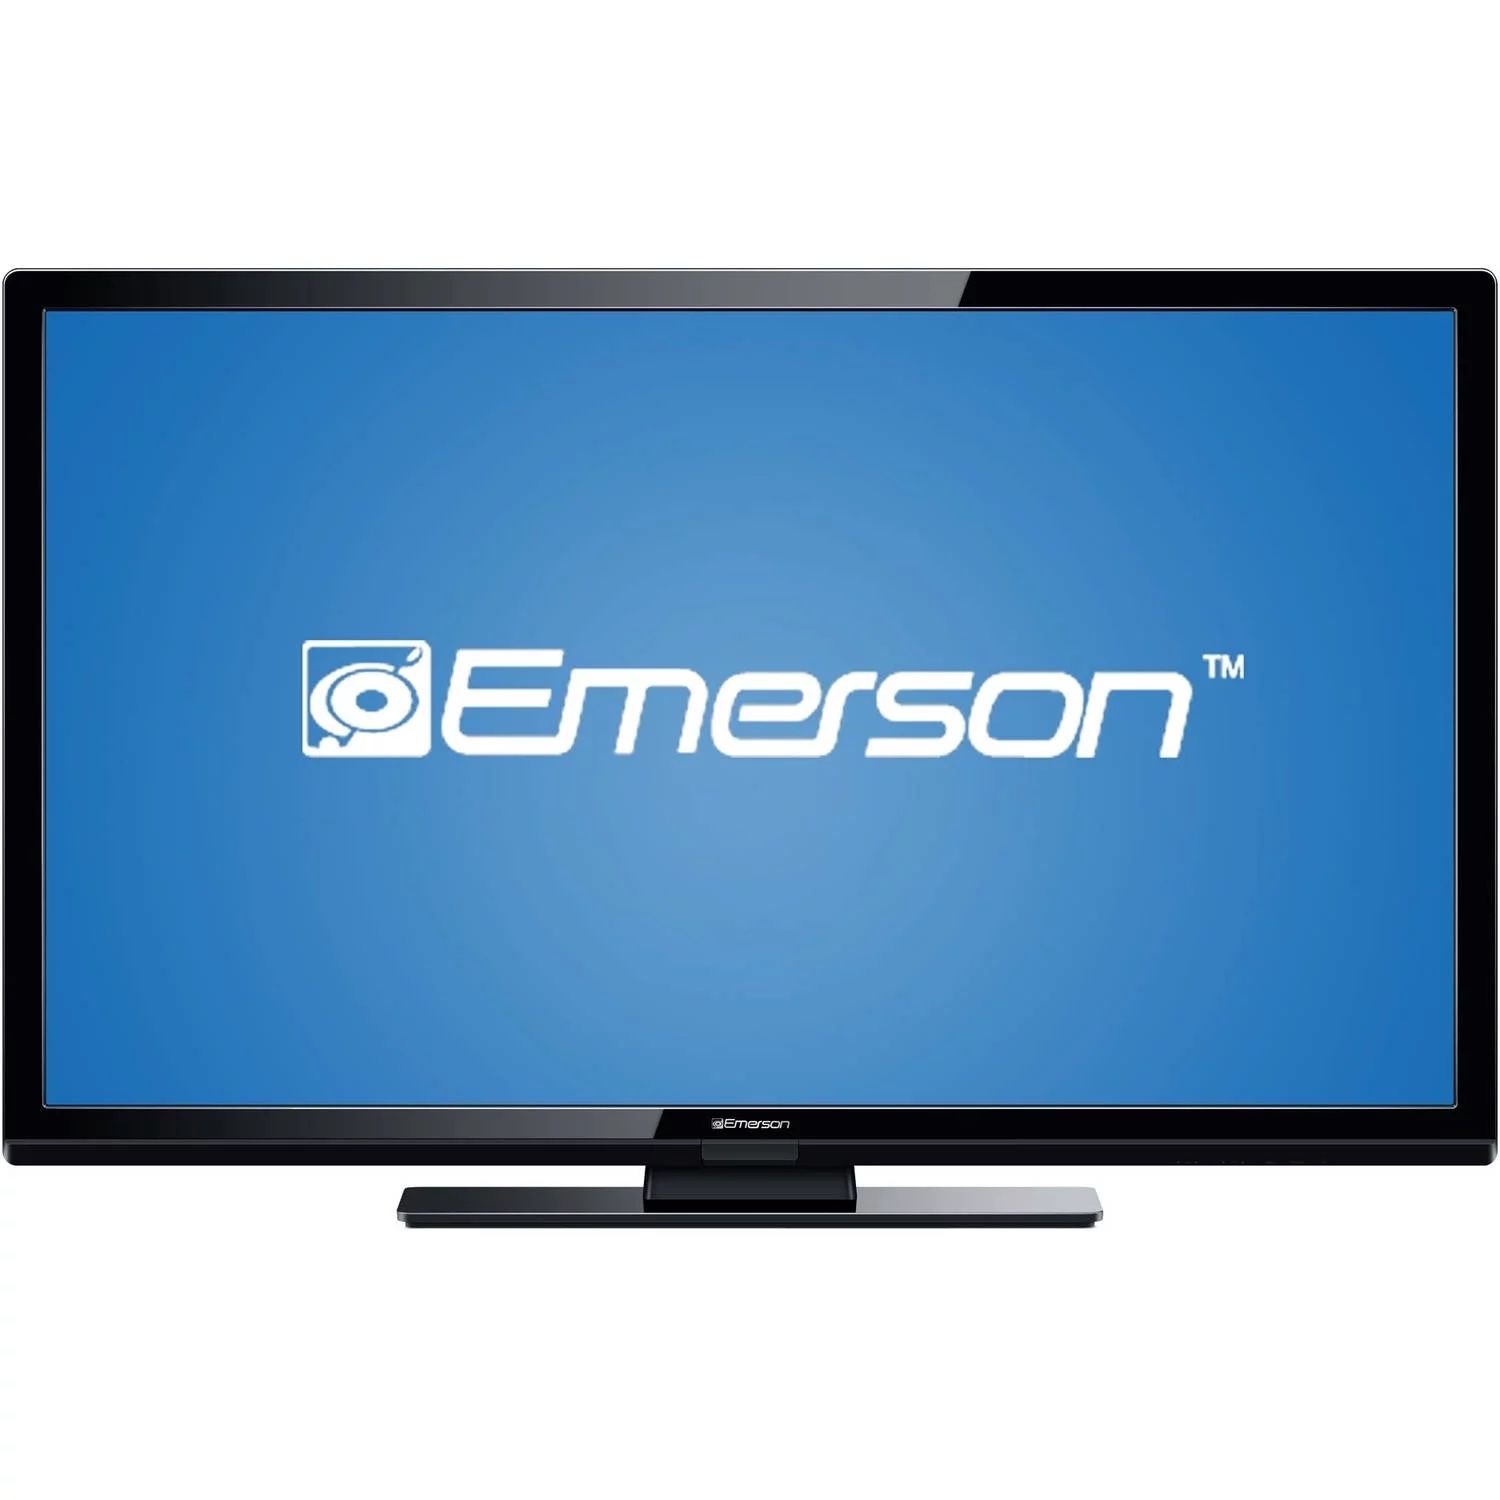 Emerson 55 Inch Tv